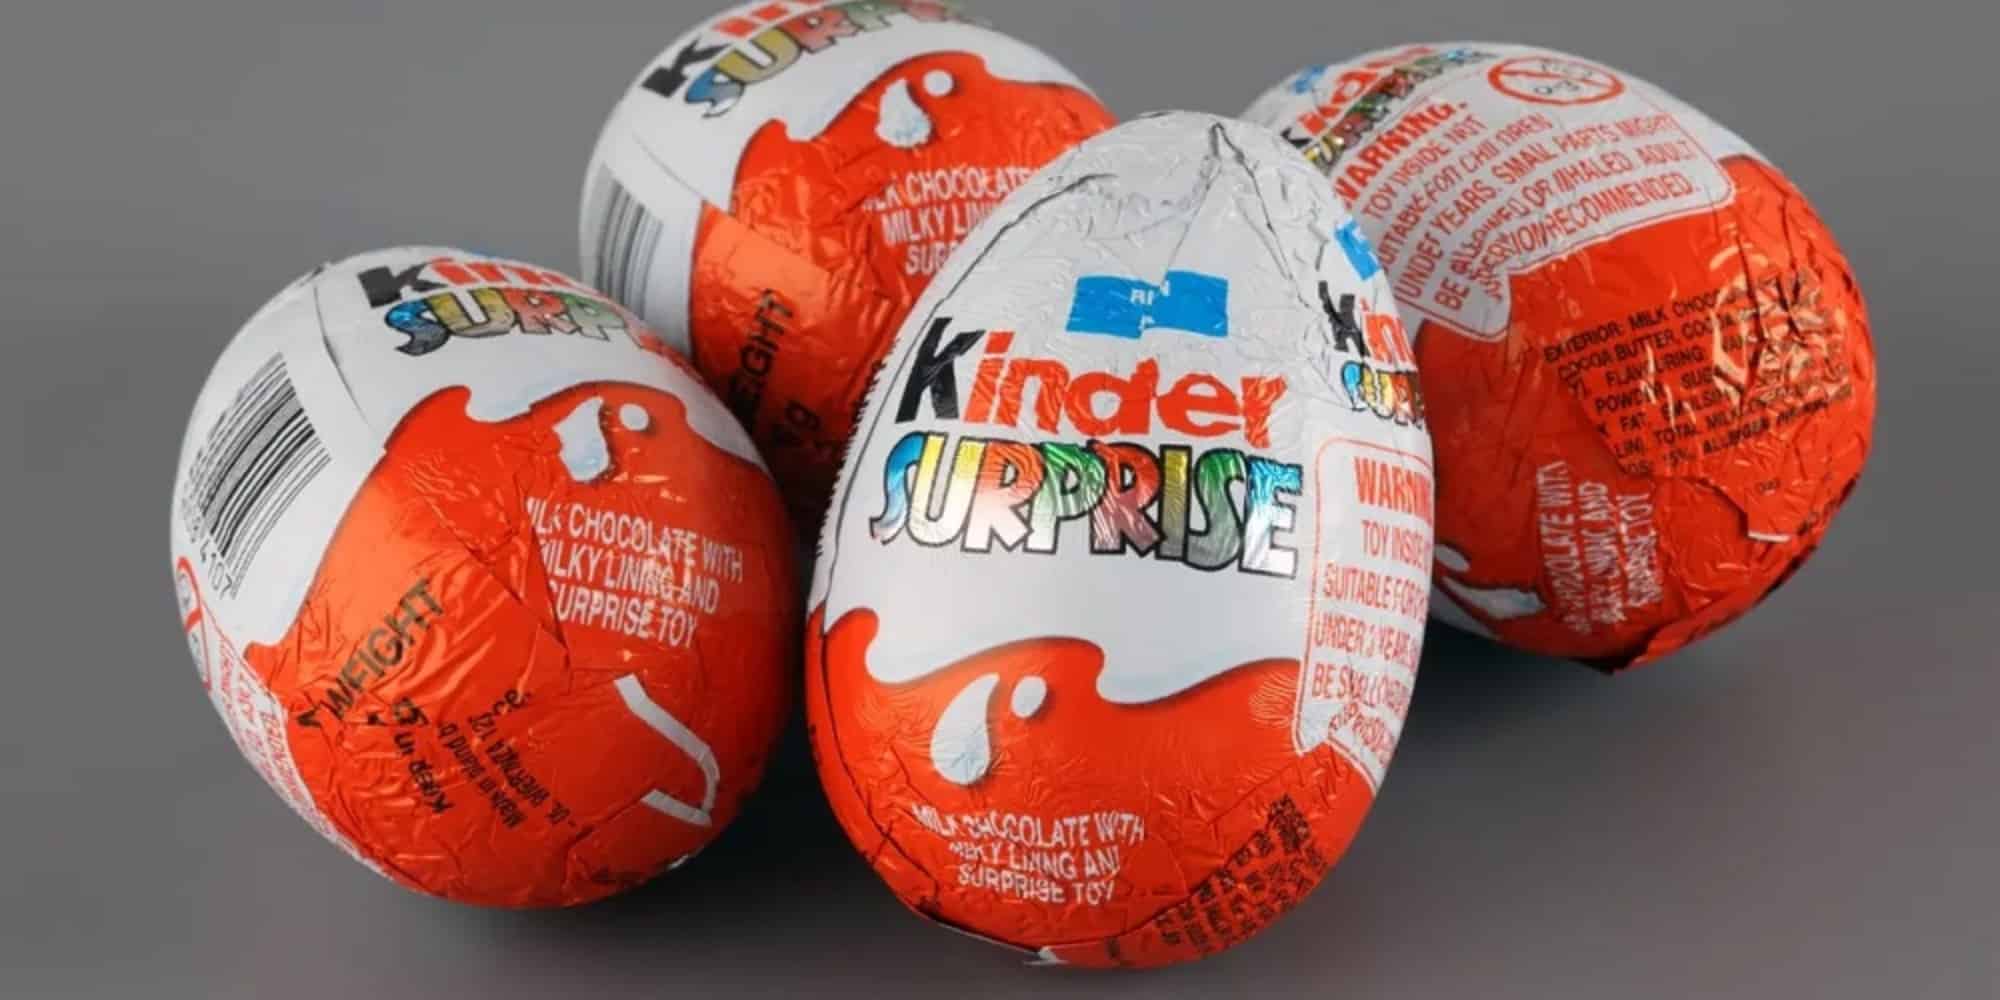 kinder 1 - Αποσύρονται προϊόντα σοκολάτας Kinder μετά από εμφάνιση σαλμονέλας σε παιδιά